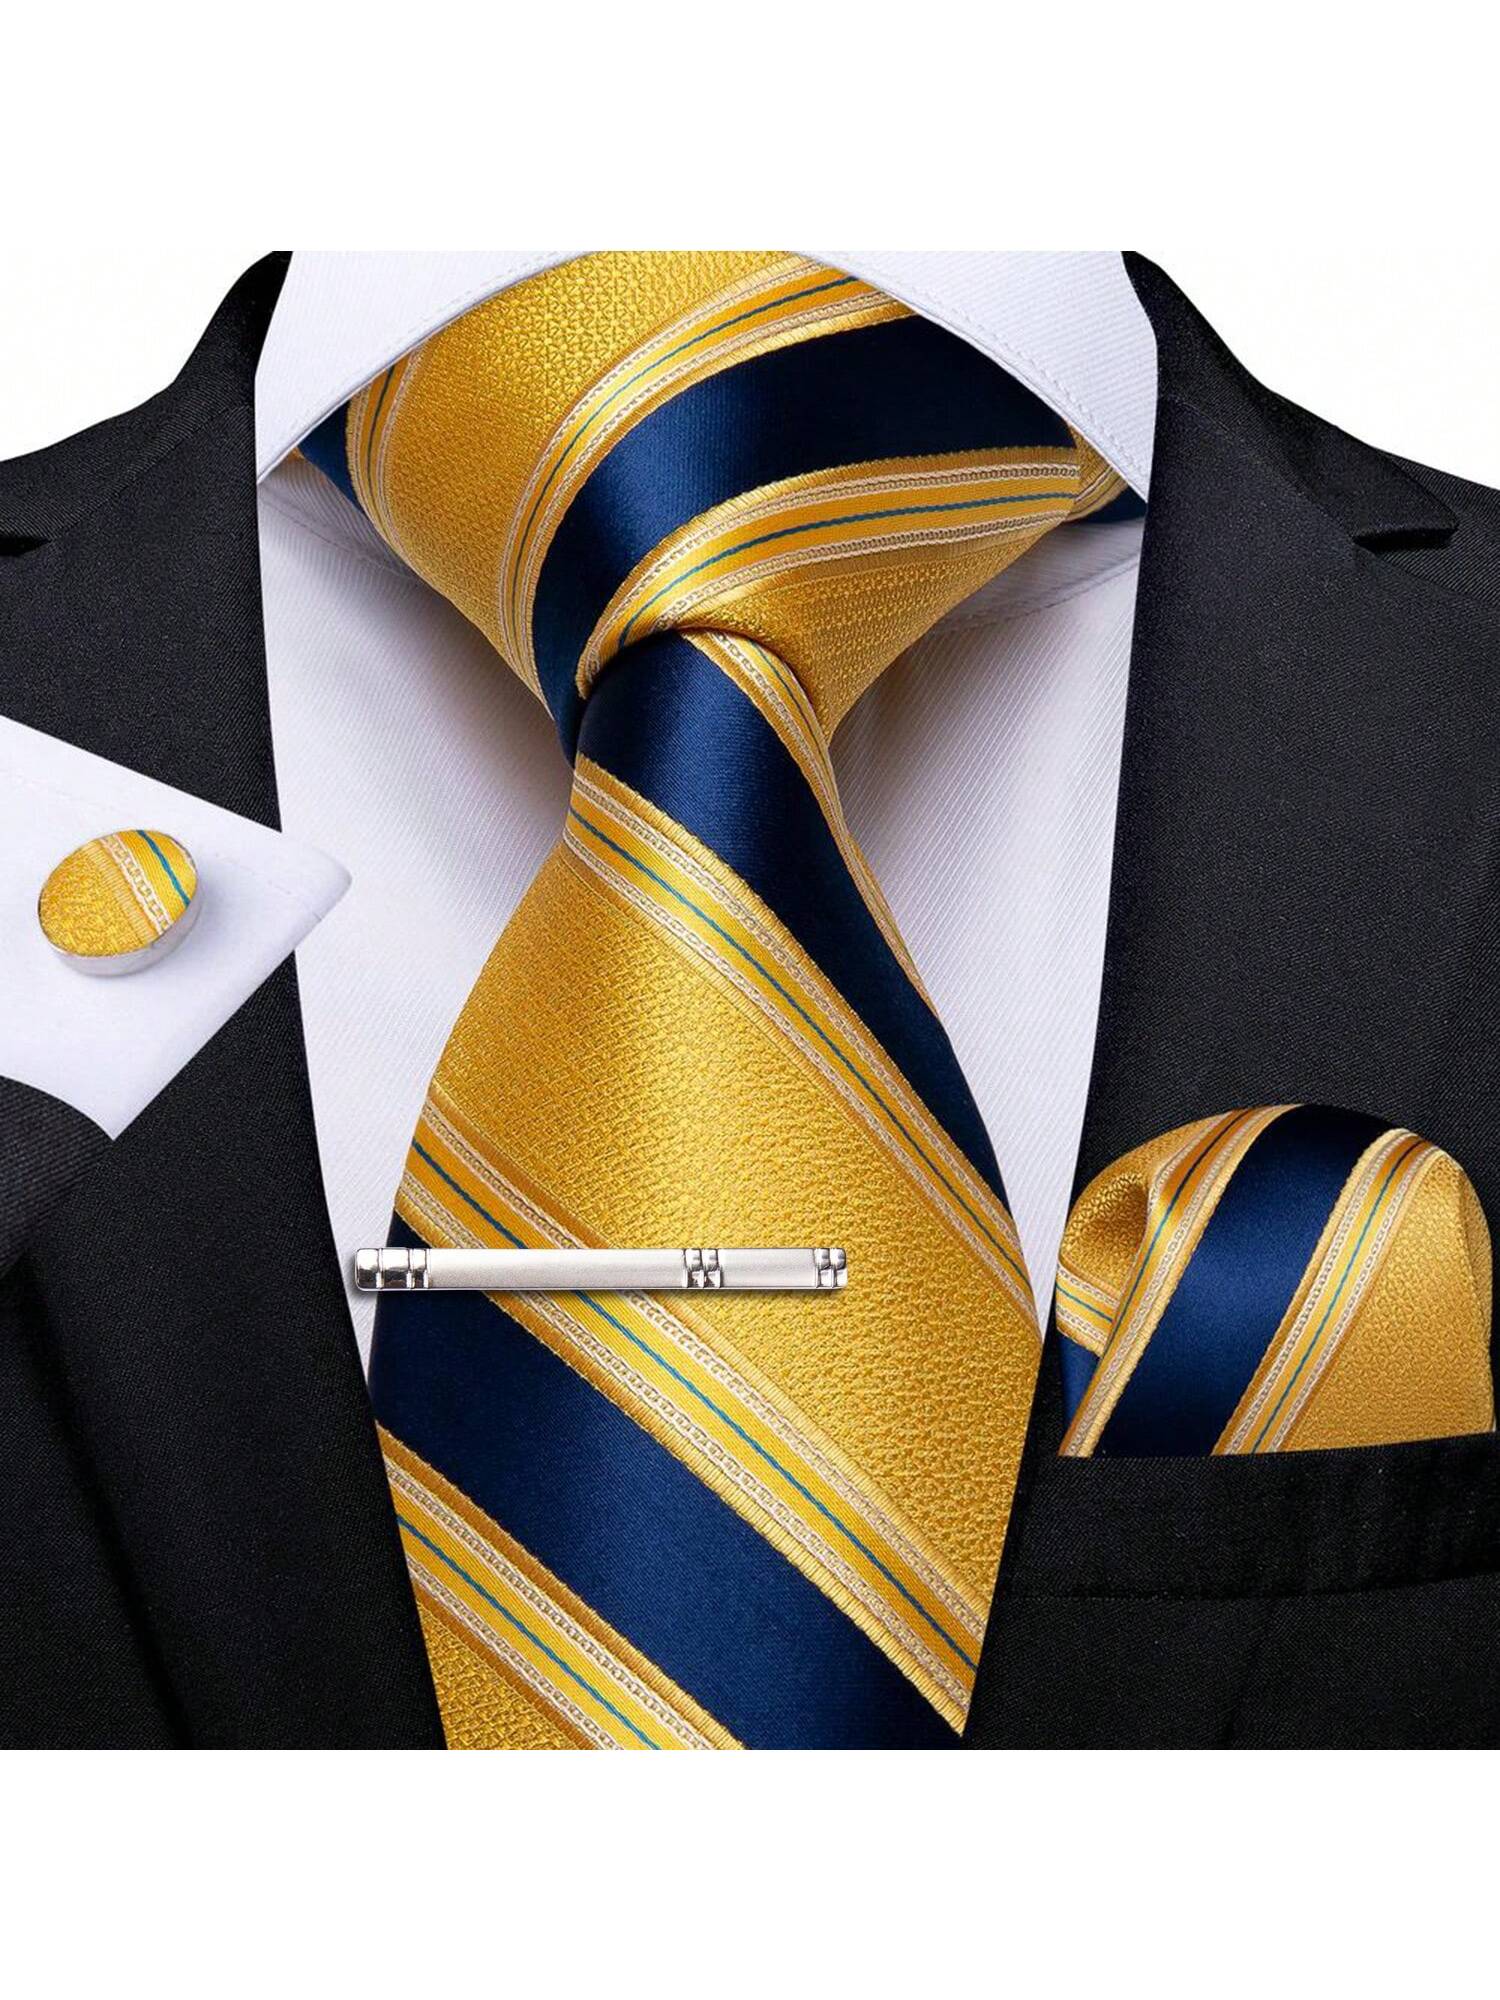 DiBanGu мужской галстук шелковый красный синий однотонный свадебный галстук карманные квадратные запонки зажим набор Пейсли, желтый золотой полосатый темно синий мужской галстук шелковый жаккардовый галстук деловой галстук для свадебной вечеринки галстук платок галс